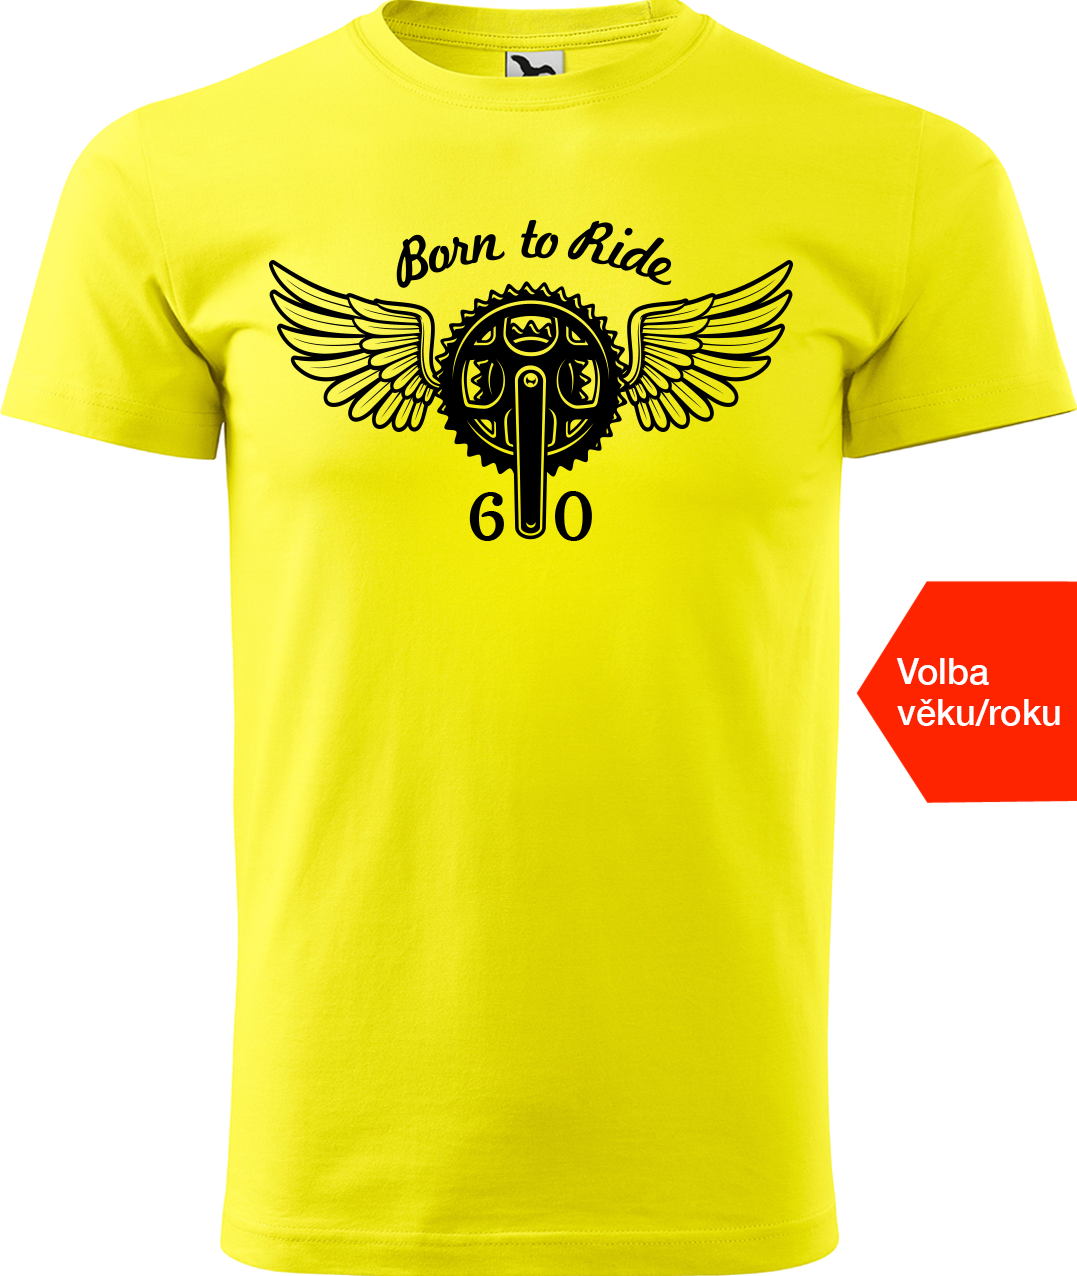 Pánské tričko pro cyklistu s věkem/rokem narození - Born to Ride (převodník) Velikost: M, Barva: Žlutá (04)